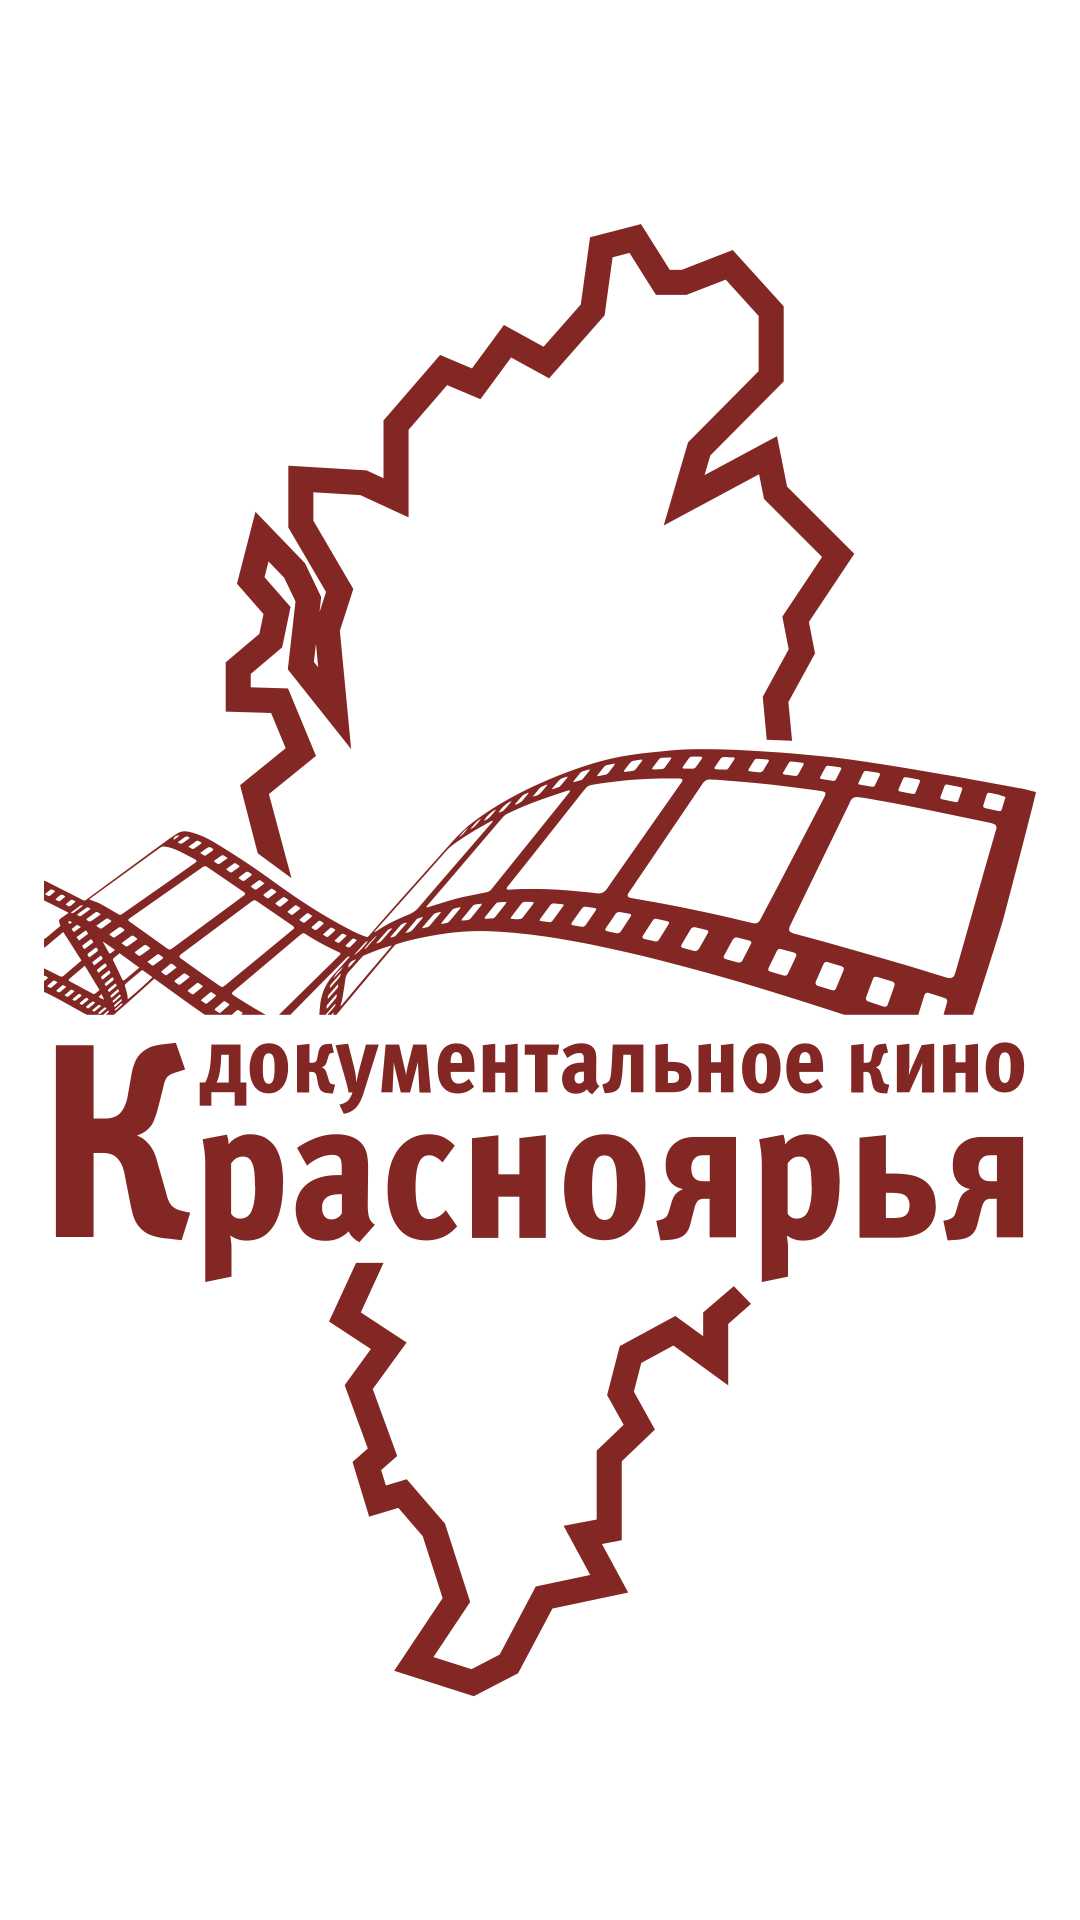 Состоялся премьерный показ фильмов в рамках проекта "Доукментальное кино Красноярья"